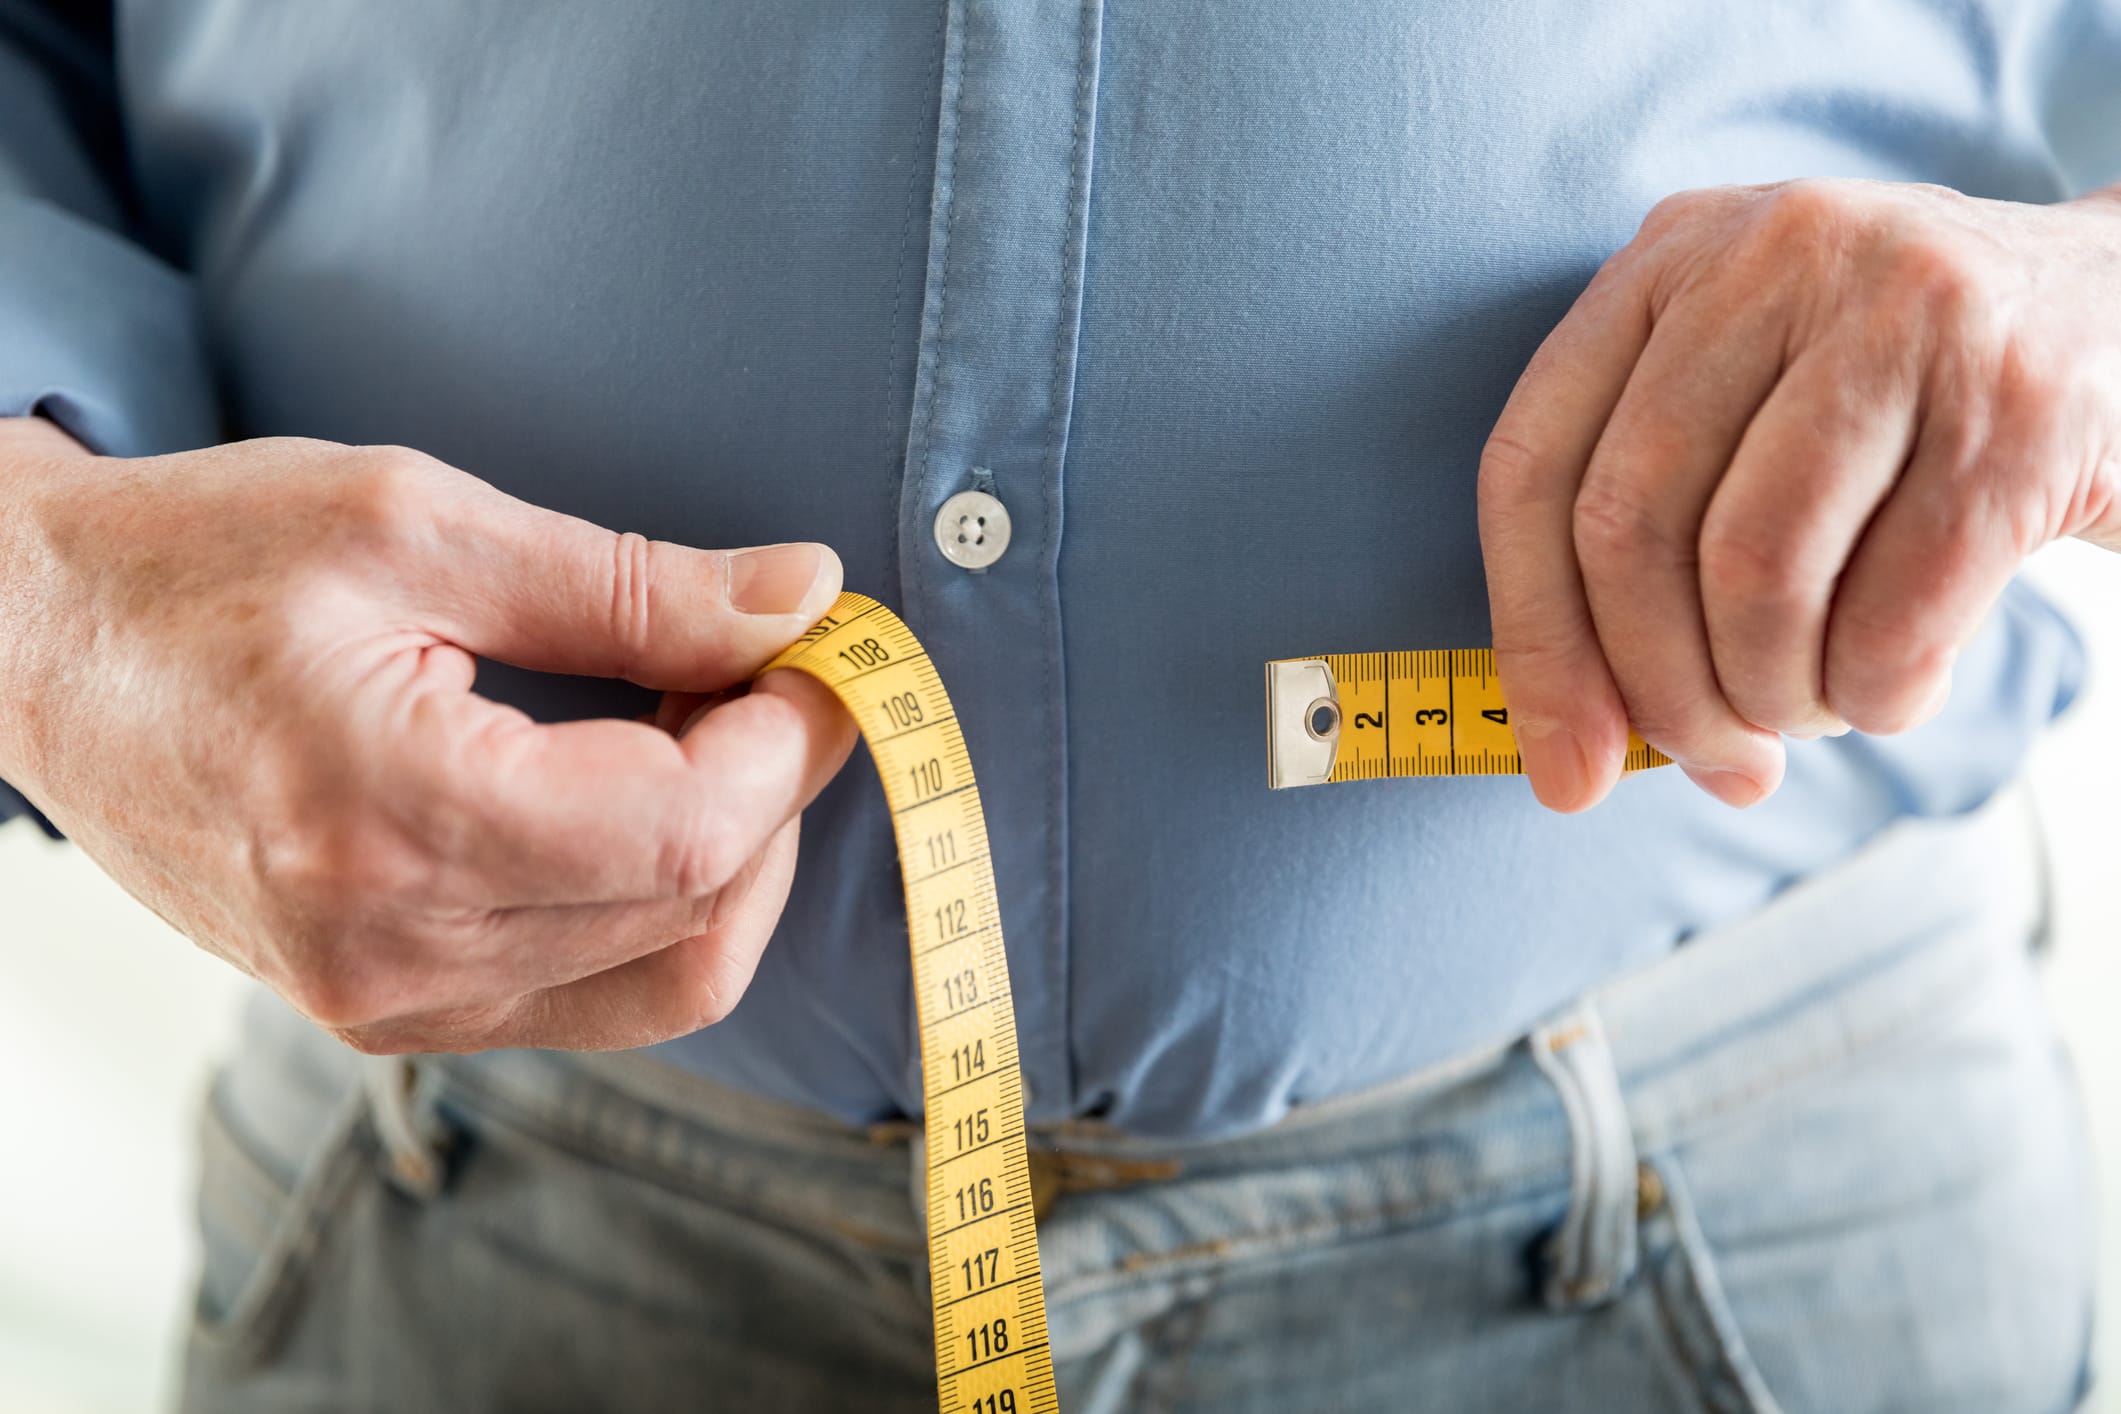 Crediti iStock - Ridurre le calorie rafforza i muscoli e rende più longevi